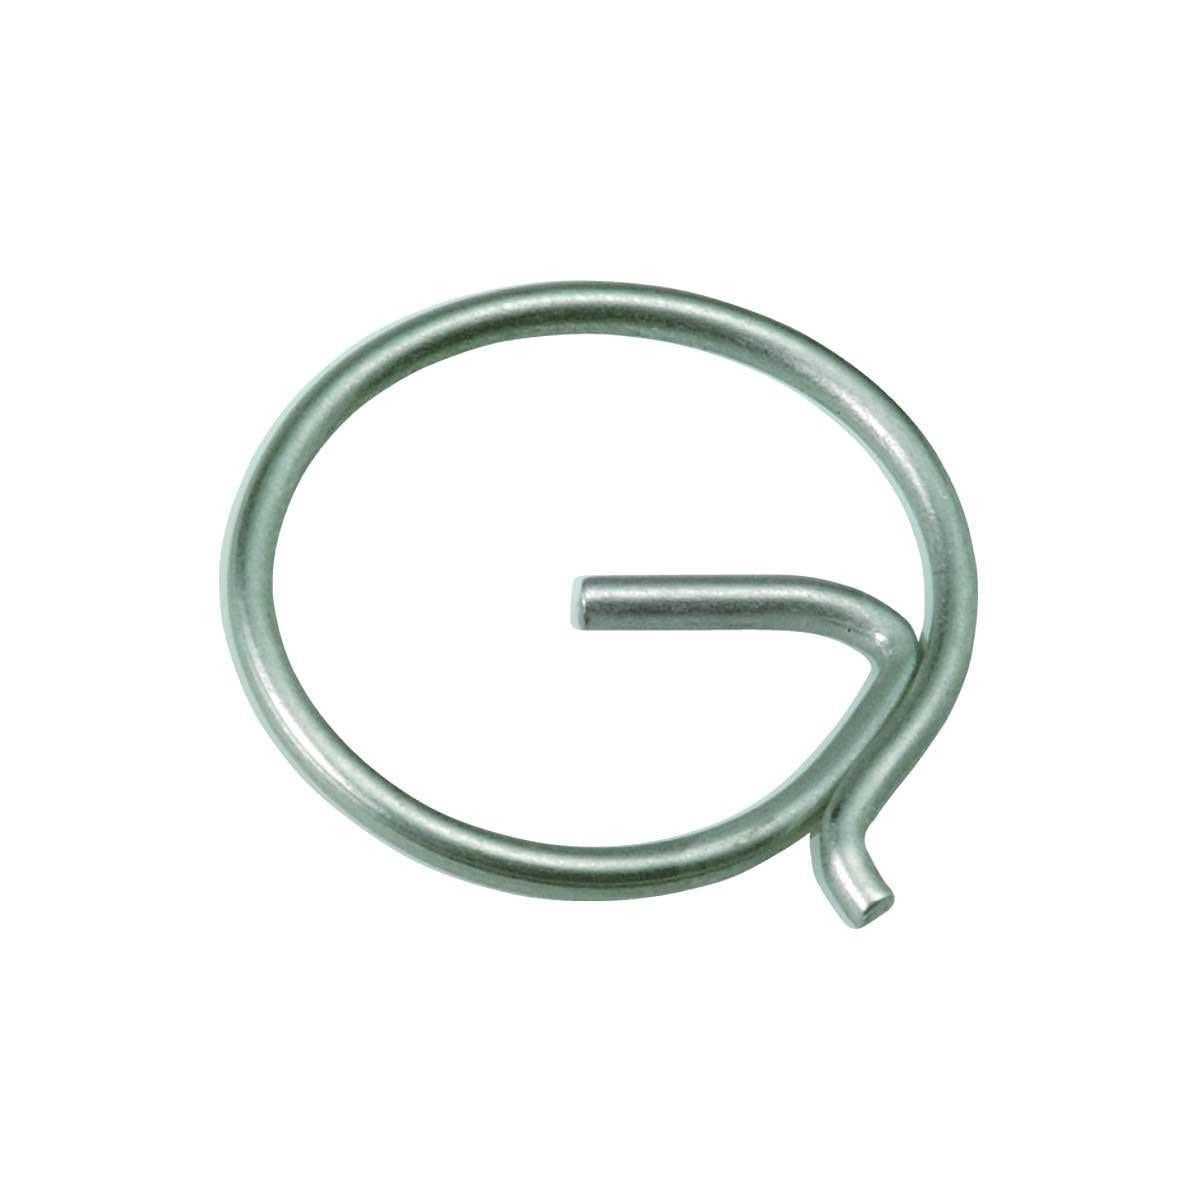 Stainless Steel G Split Ring - 1.25mm x 13mm